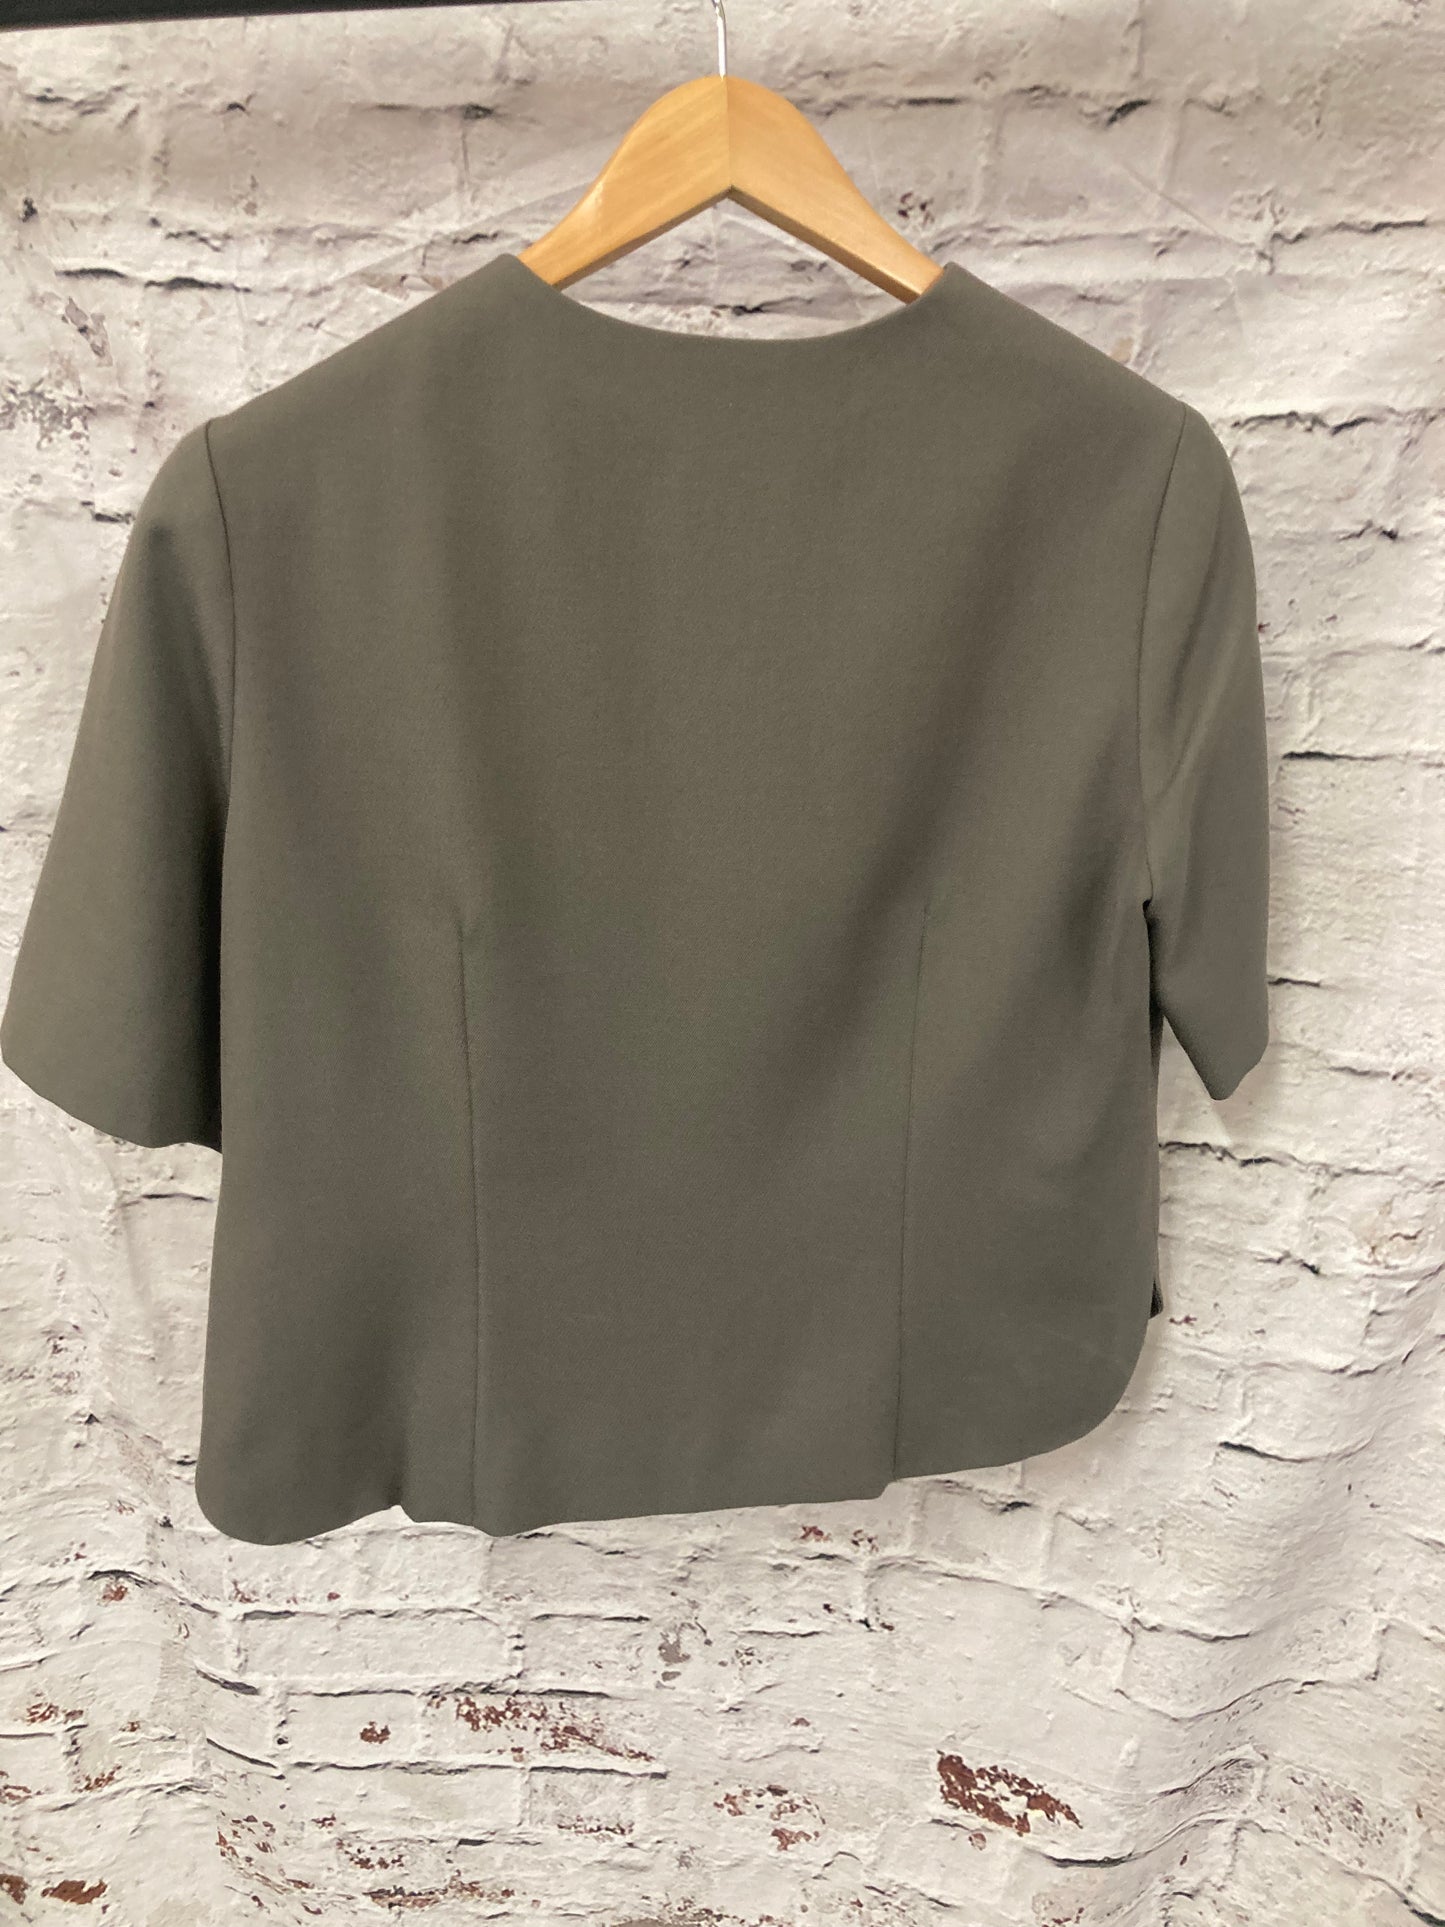 Vintage Olive Green Short Sleeve Jacket Size 14